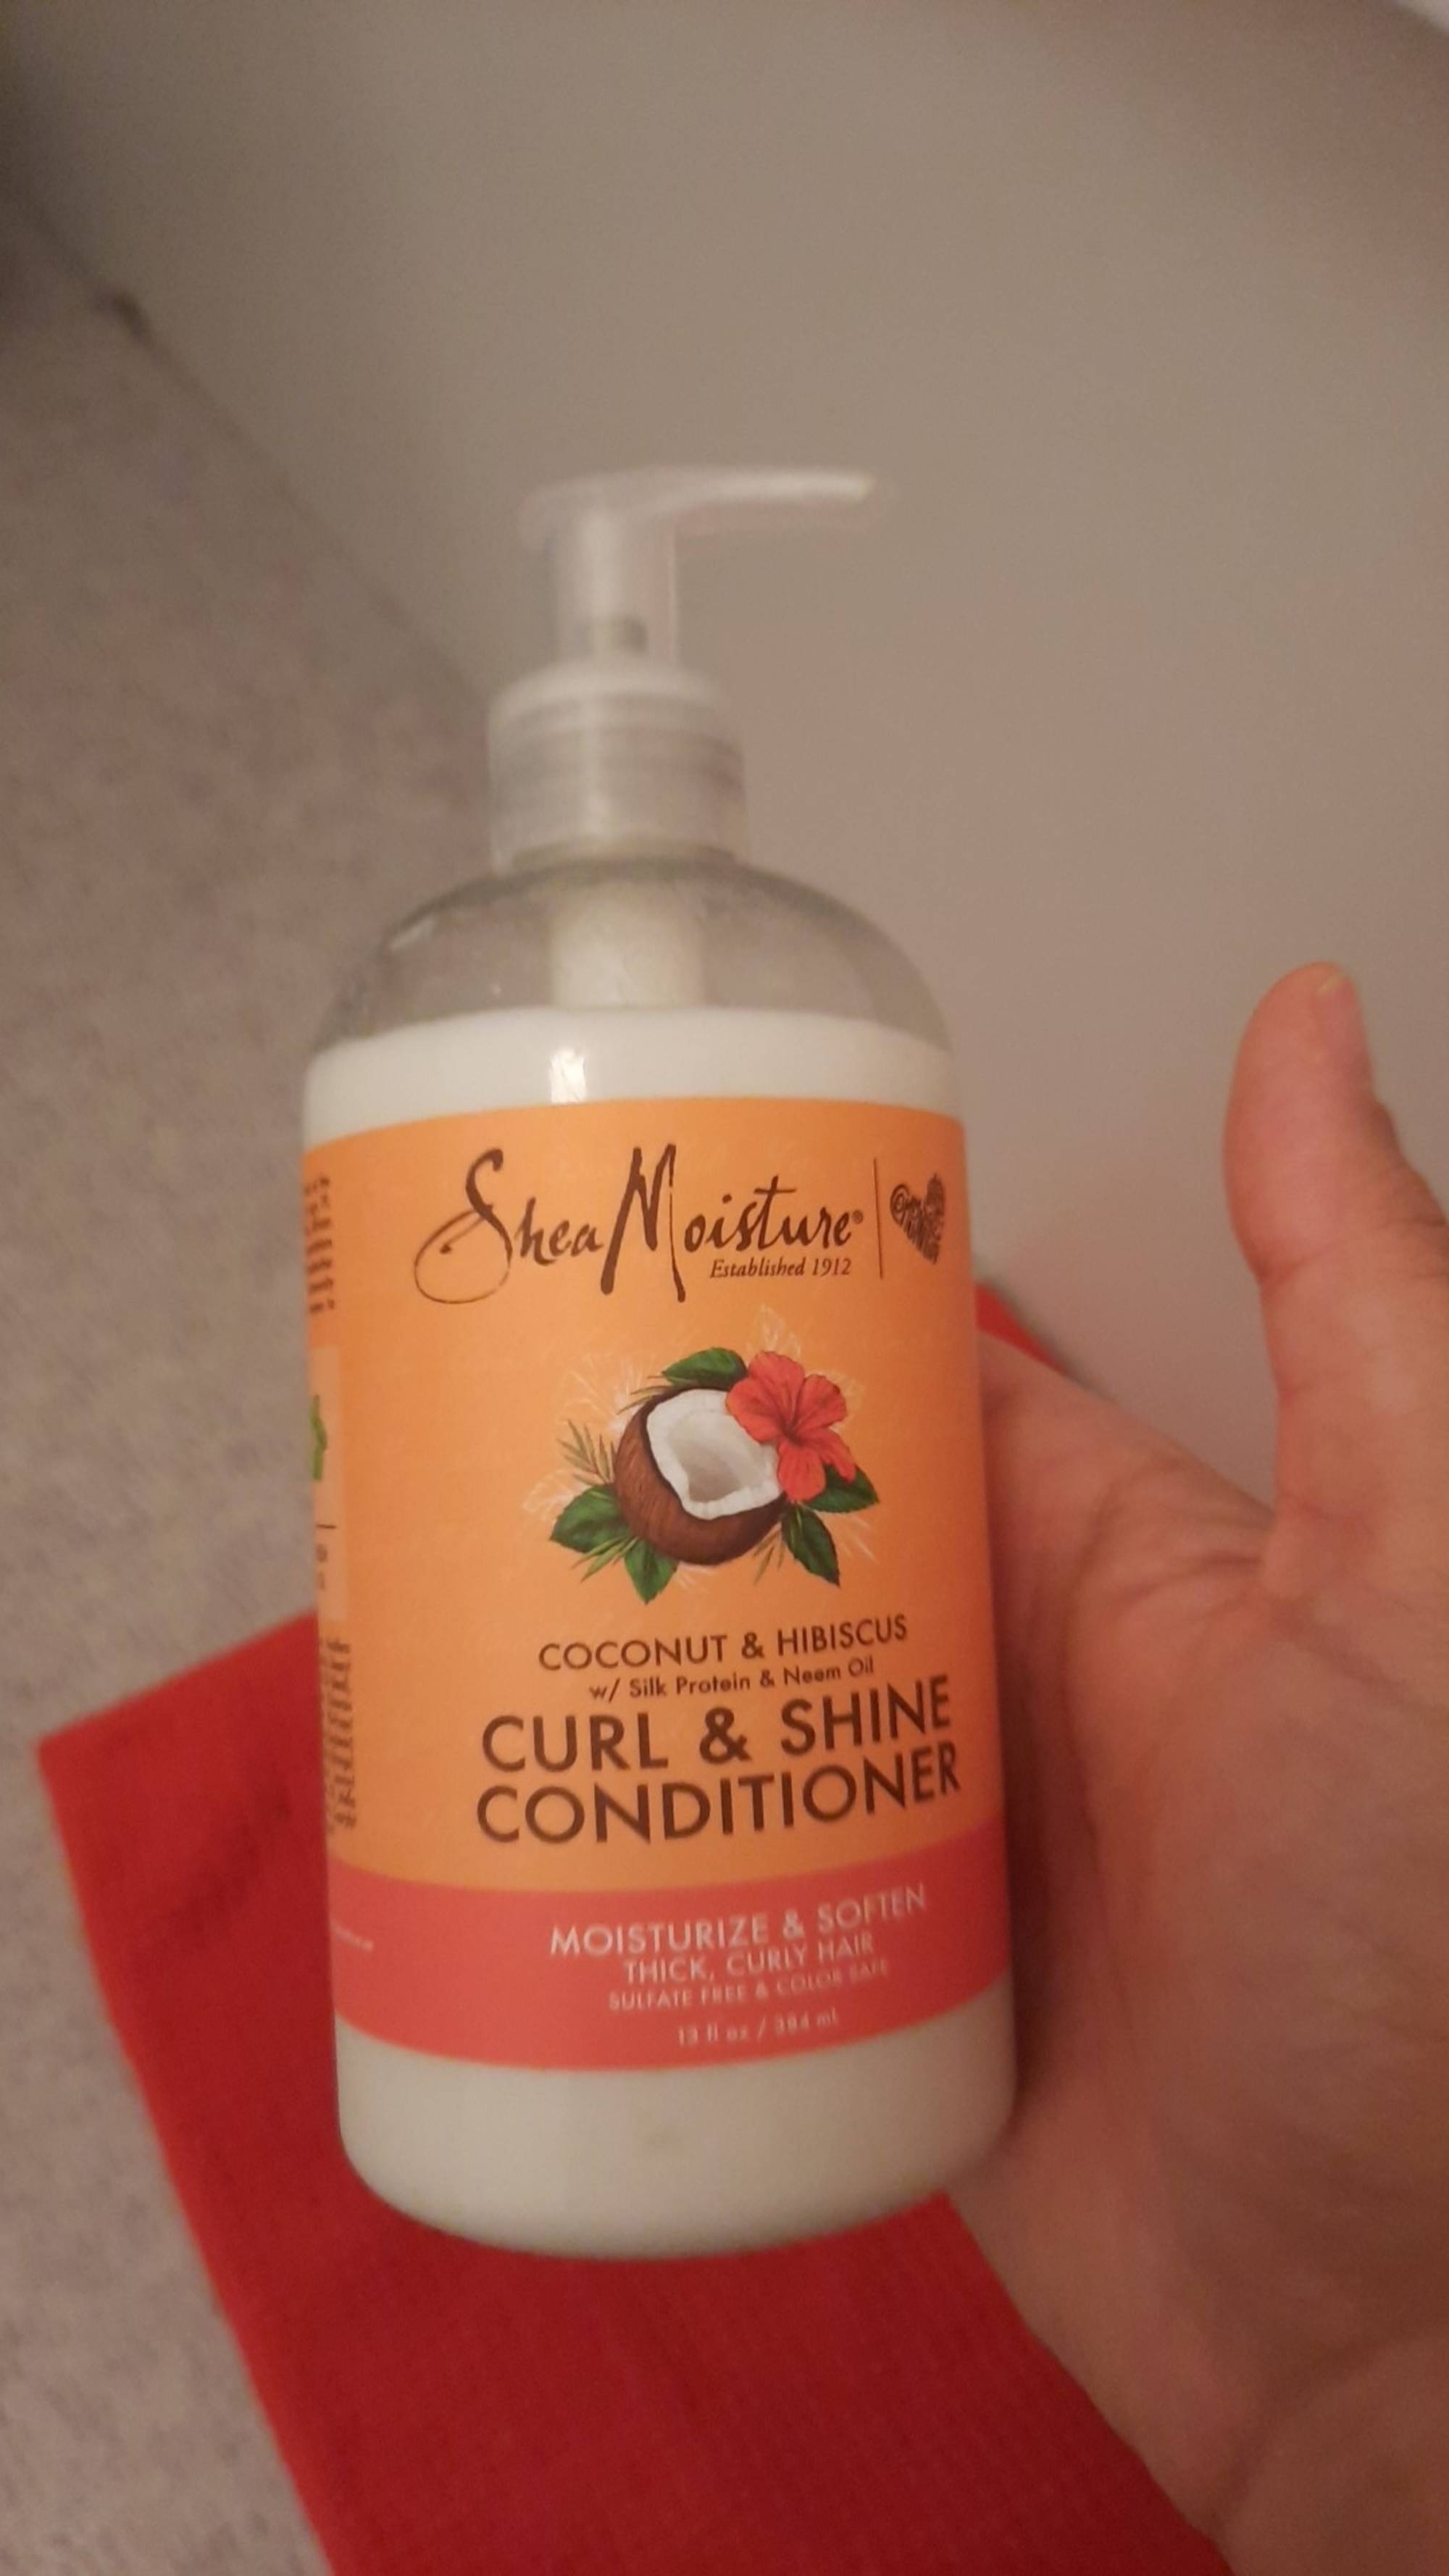 SHEA MOISTURE - Coconut & hibiscus - Curl & shine conditioner